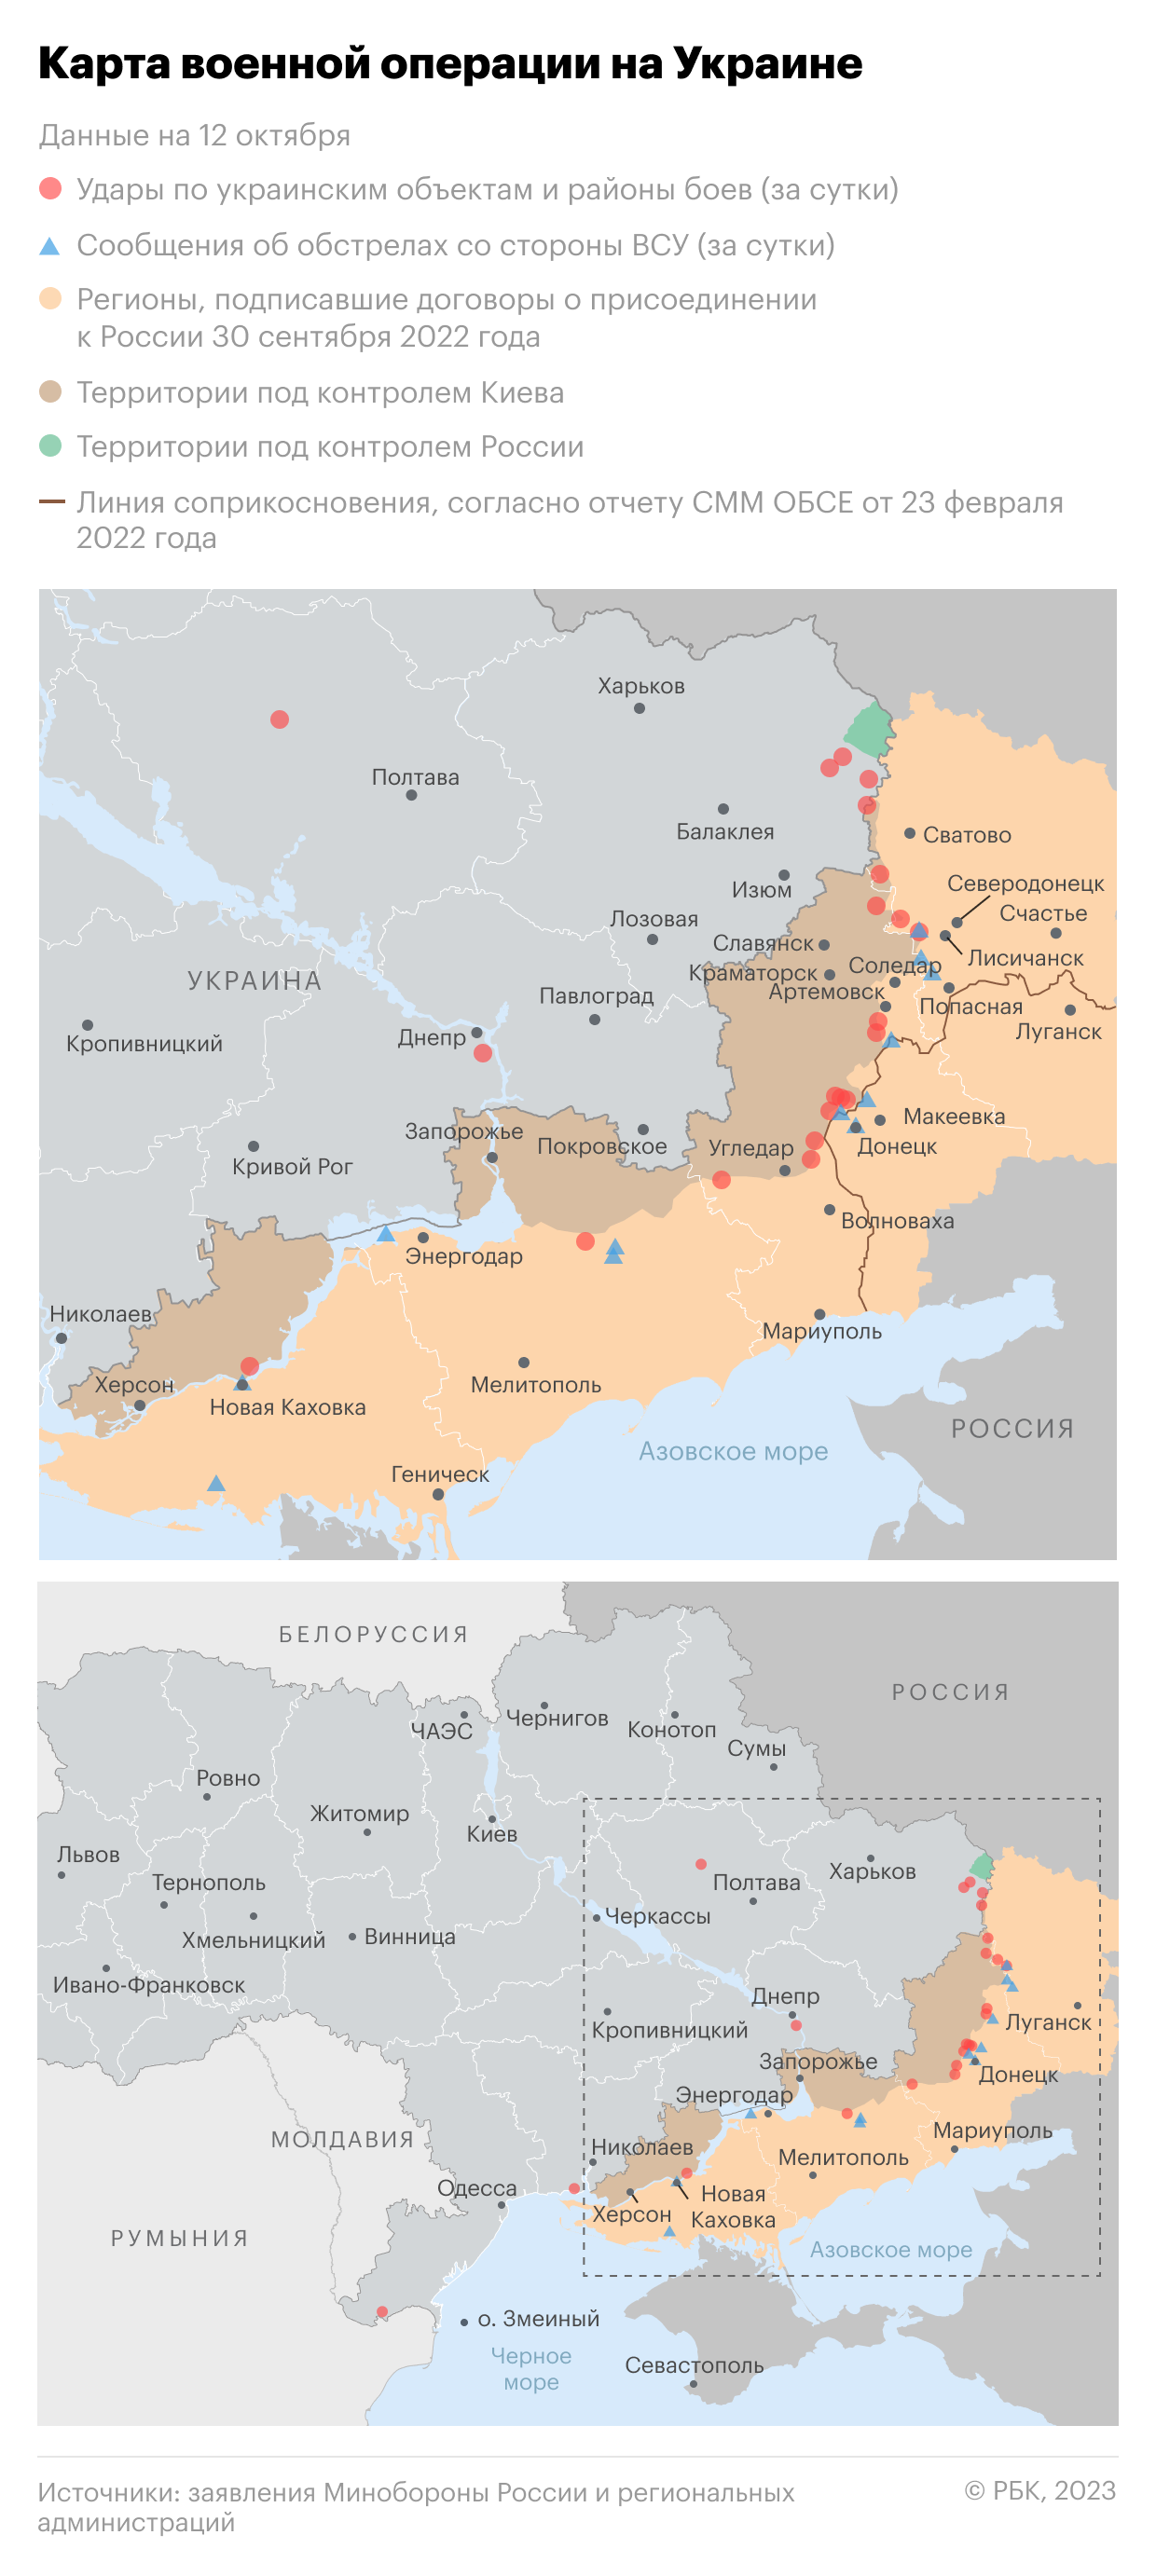 Военная операция на Украине. Карта на 12 октября